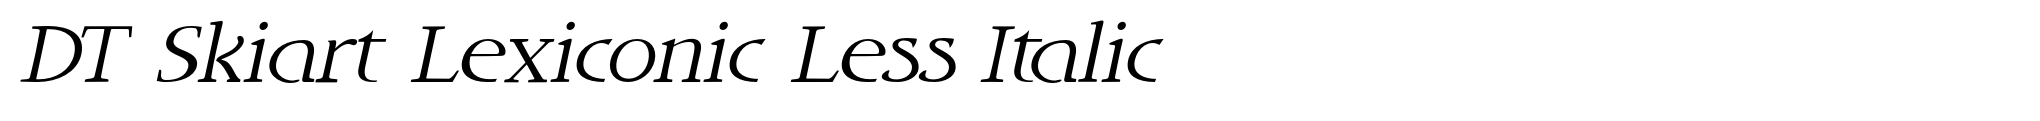 DT Skiart Lexiconic Less Italic image